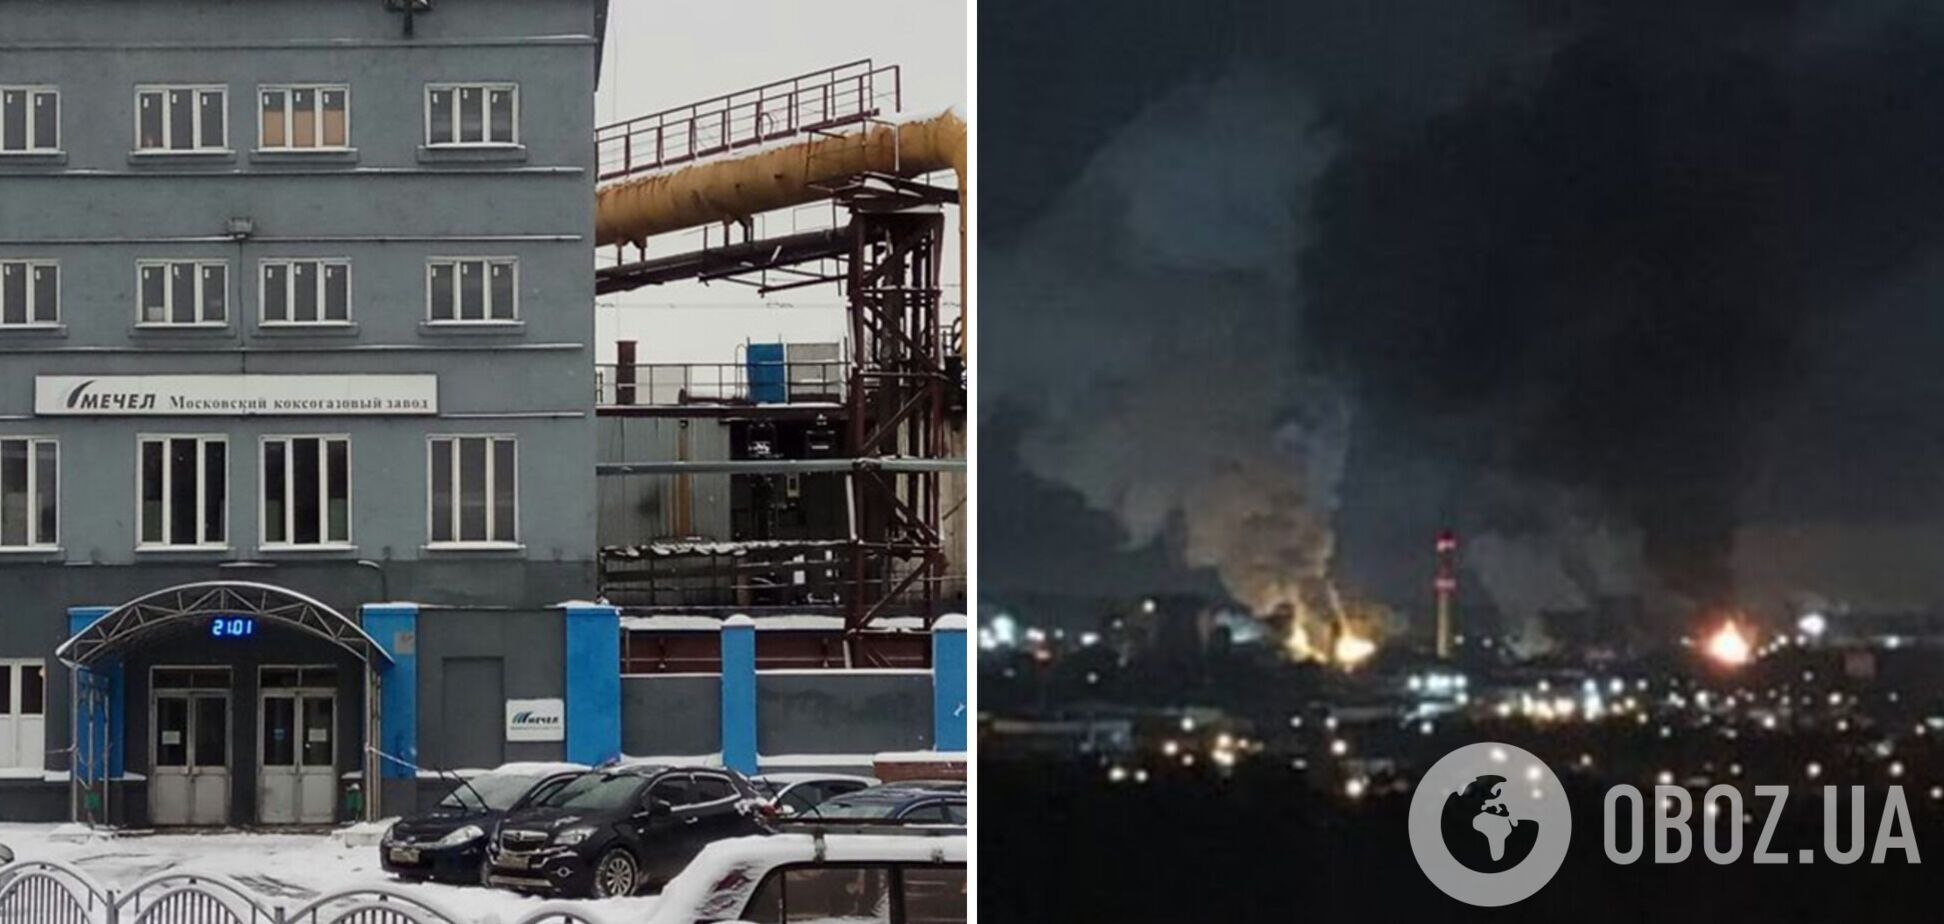 Под Москвой вспыхнул масштабный пожар на коксогазовом заводе: произошел взрыв, огонь охватил один из цехов. Фото и видео